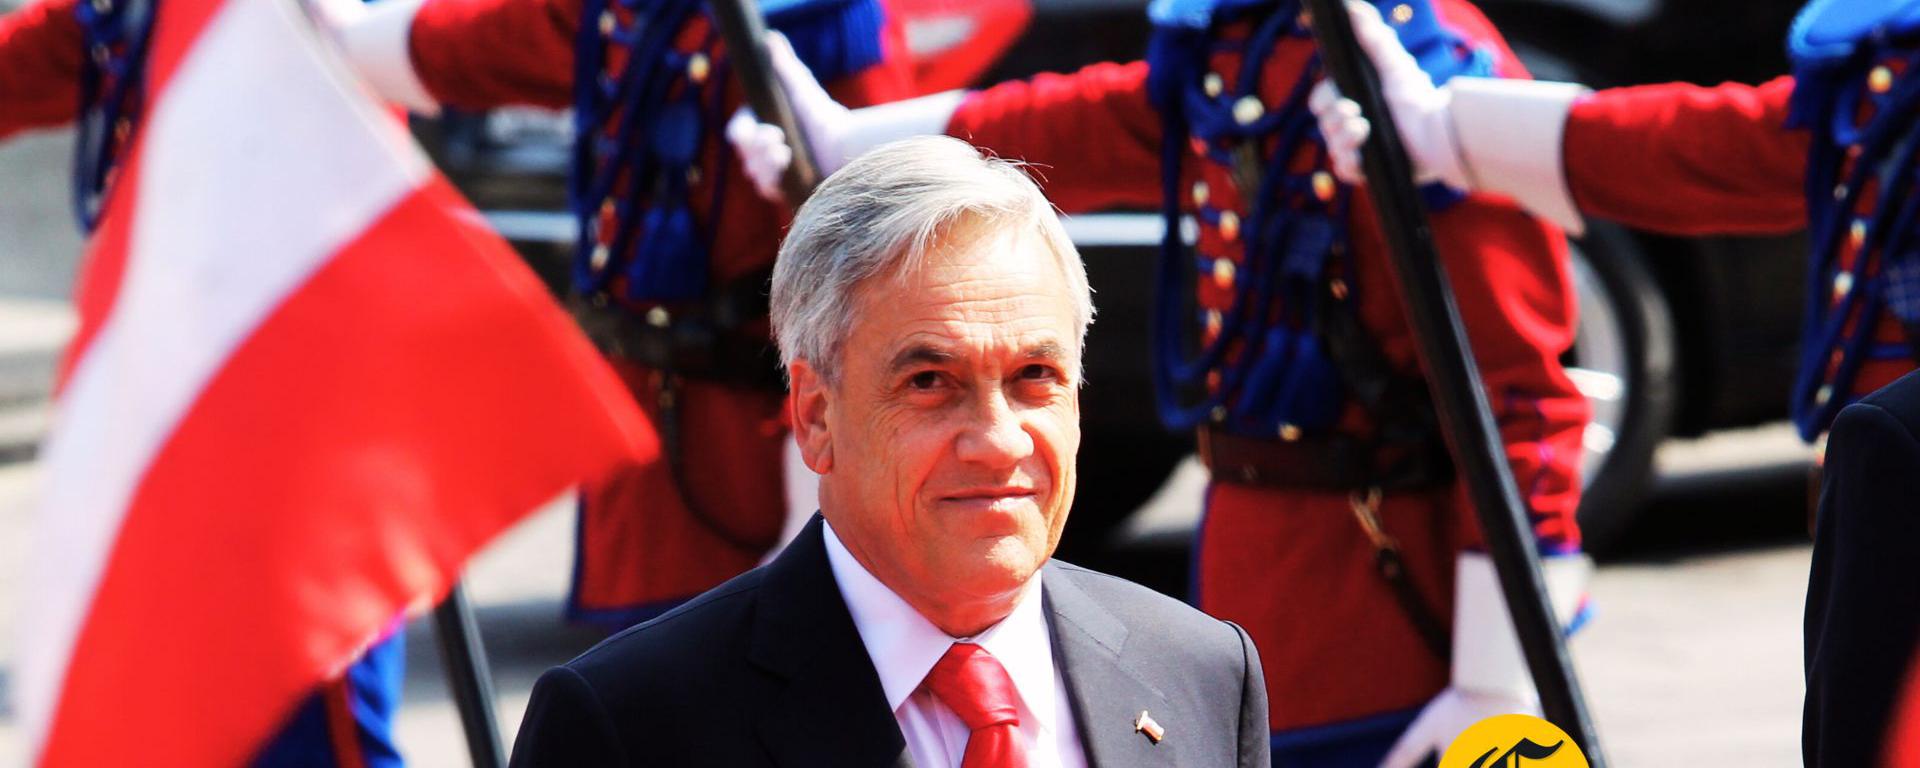 Sebastián Piñera, el presidente chileno que mostró interés por la historia y la cultura del Perú: un repaso a su relación con nuestro país